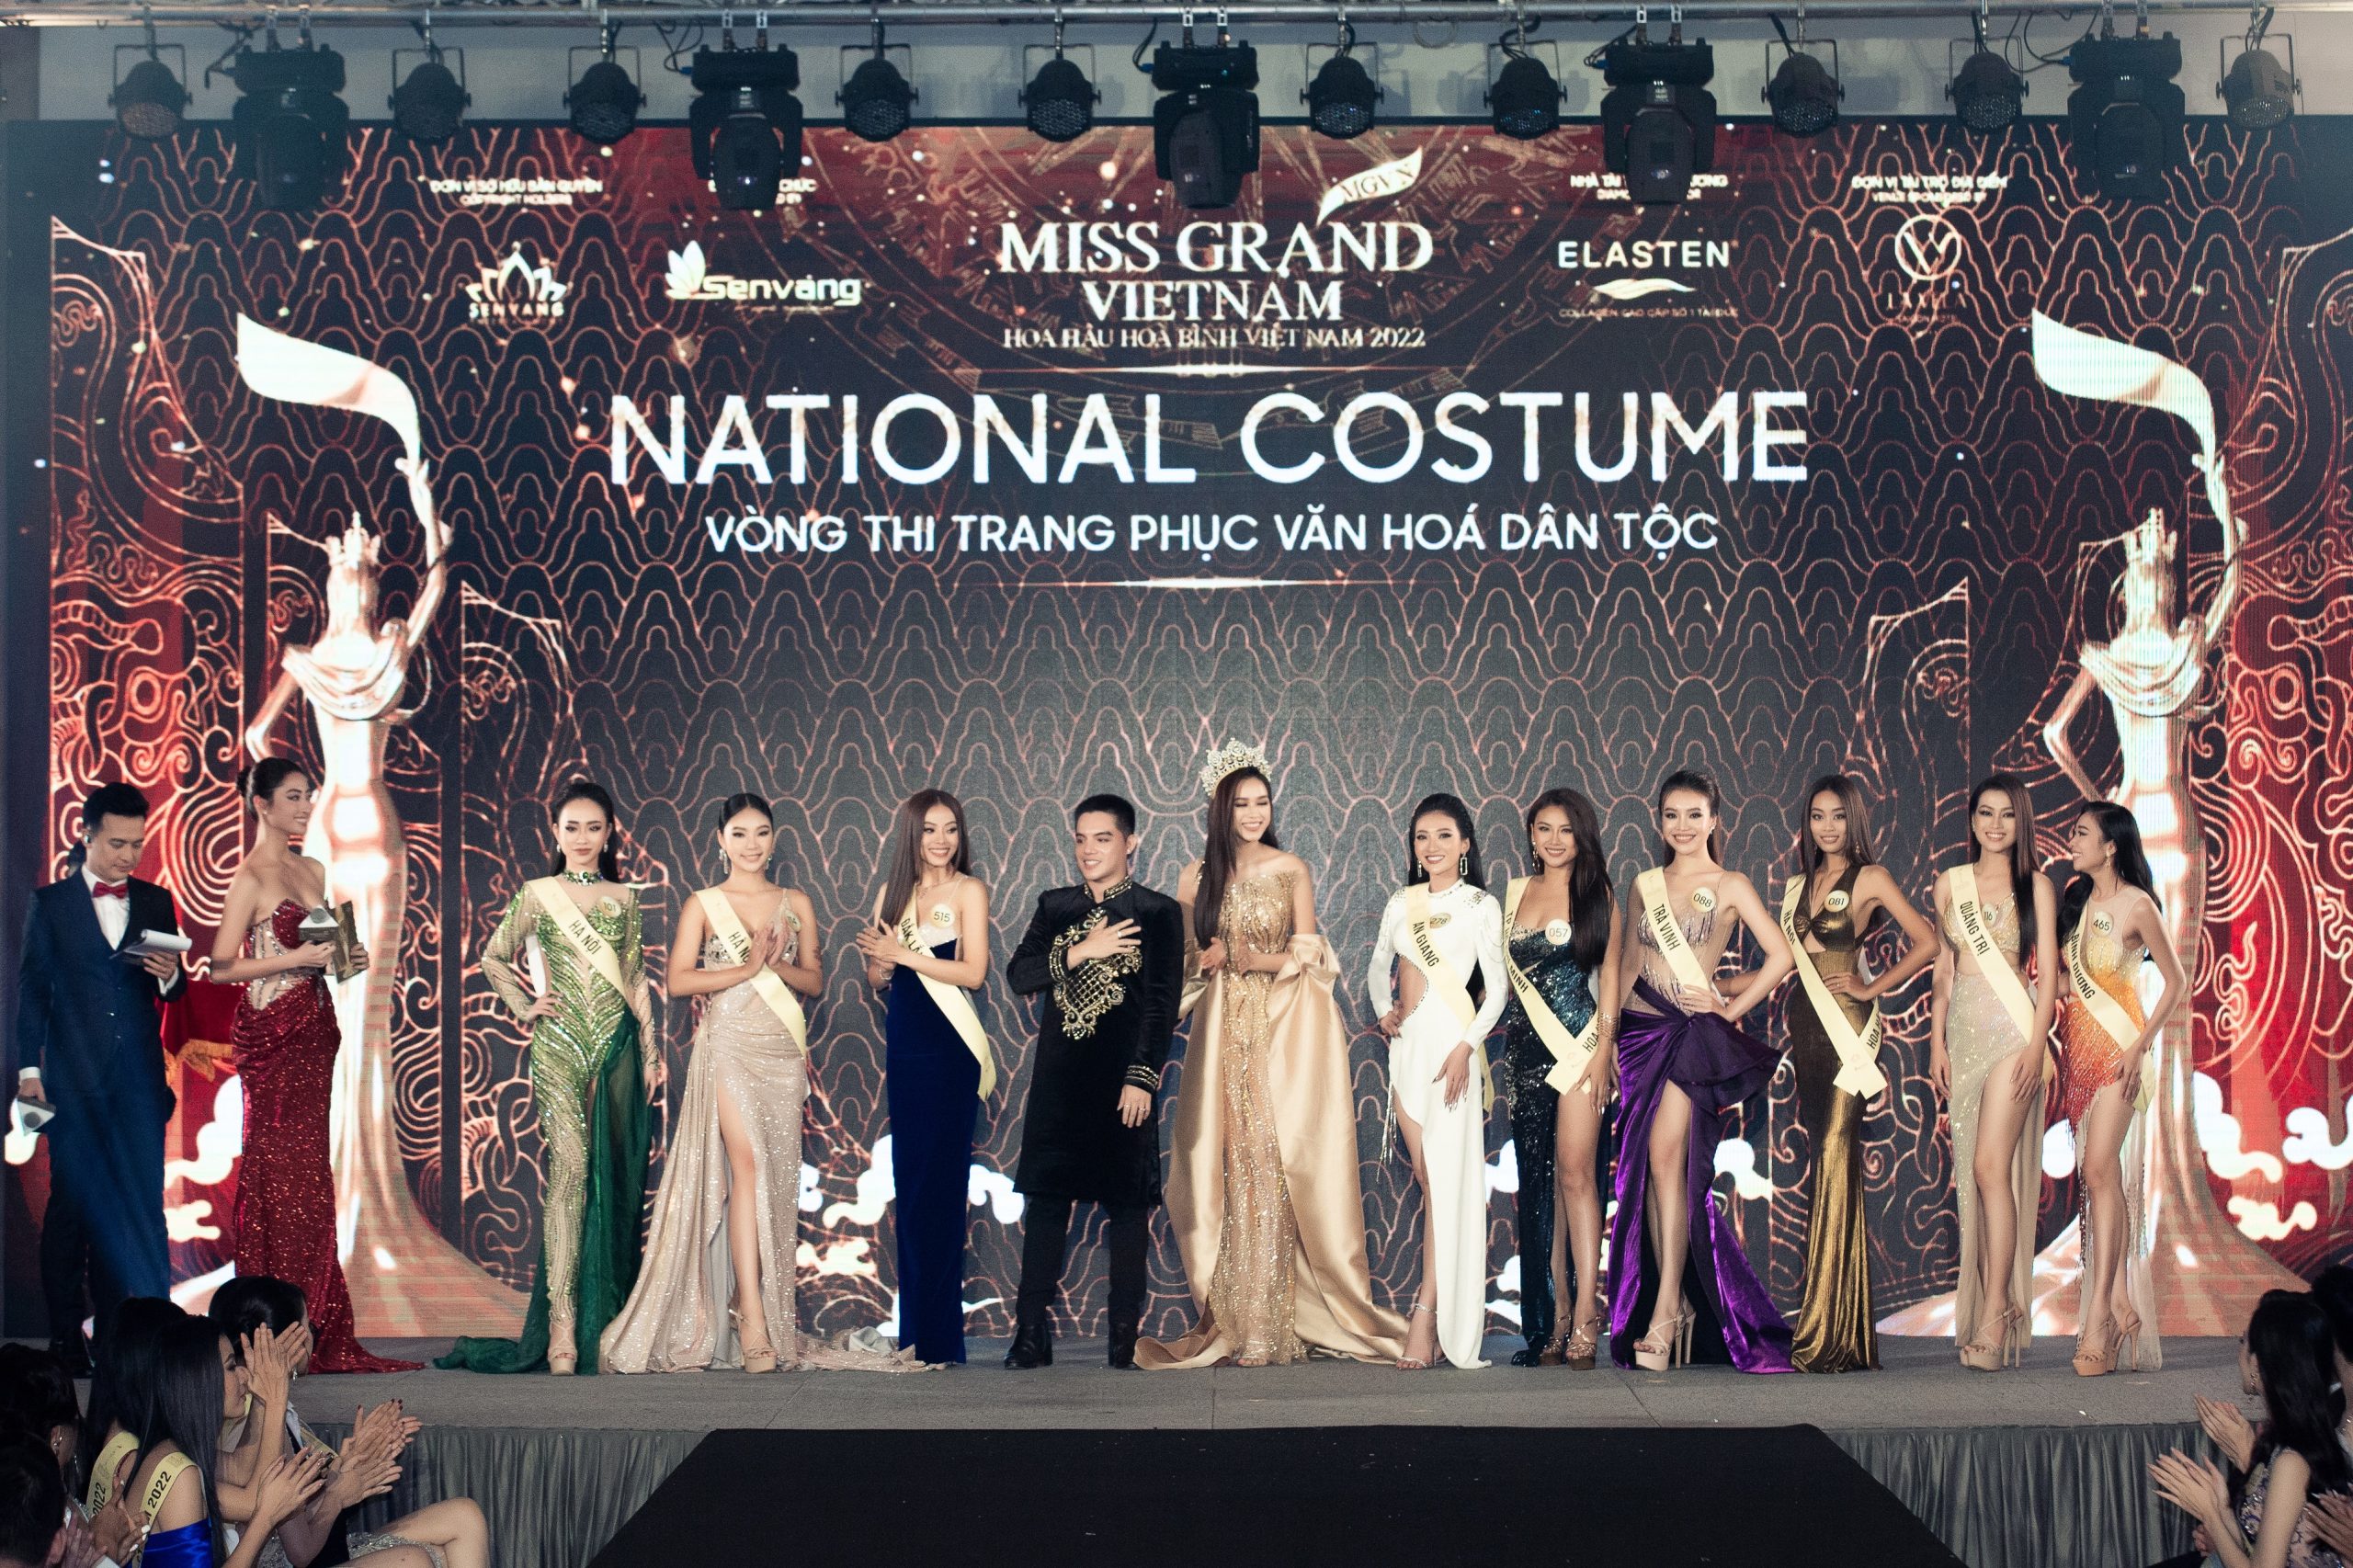 Harper's Bazaar_ Miss Grand Vietnam 2022 công bố top thí sinh vào chung kết_05